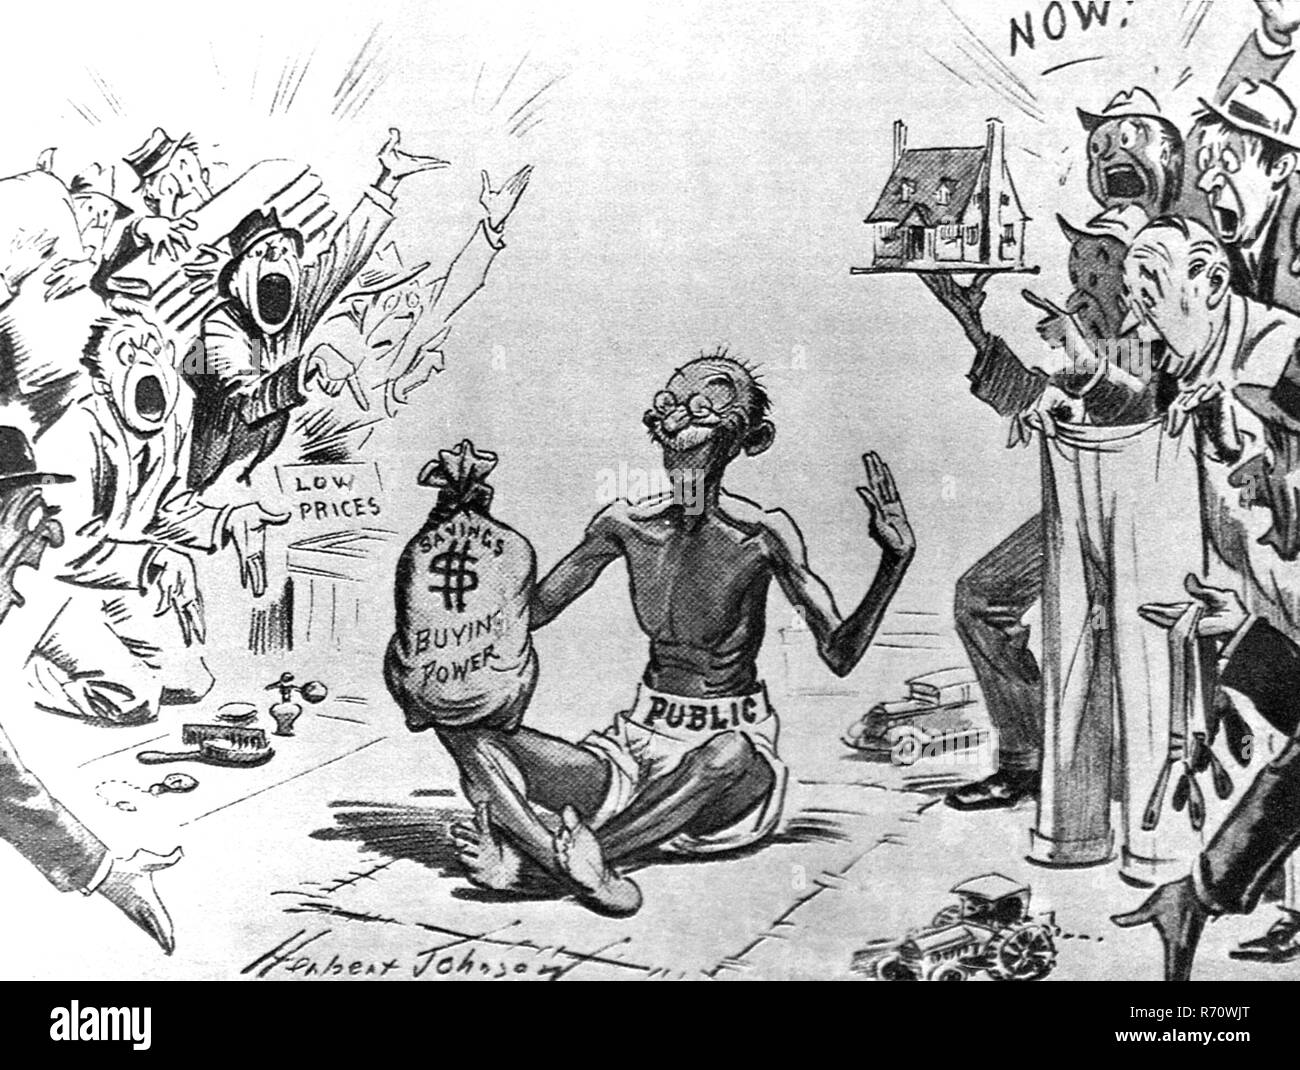 Caricature, Comment l'Amérique a vu Mahatma Gandhi résistance passive, Daily Mail, Londres, Angleterre, Royaume-Uni, 1931, ancienne image du 1900 Banque D'Images